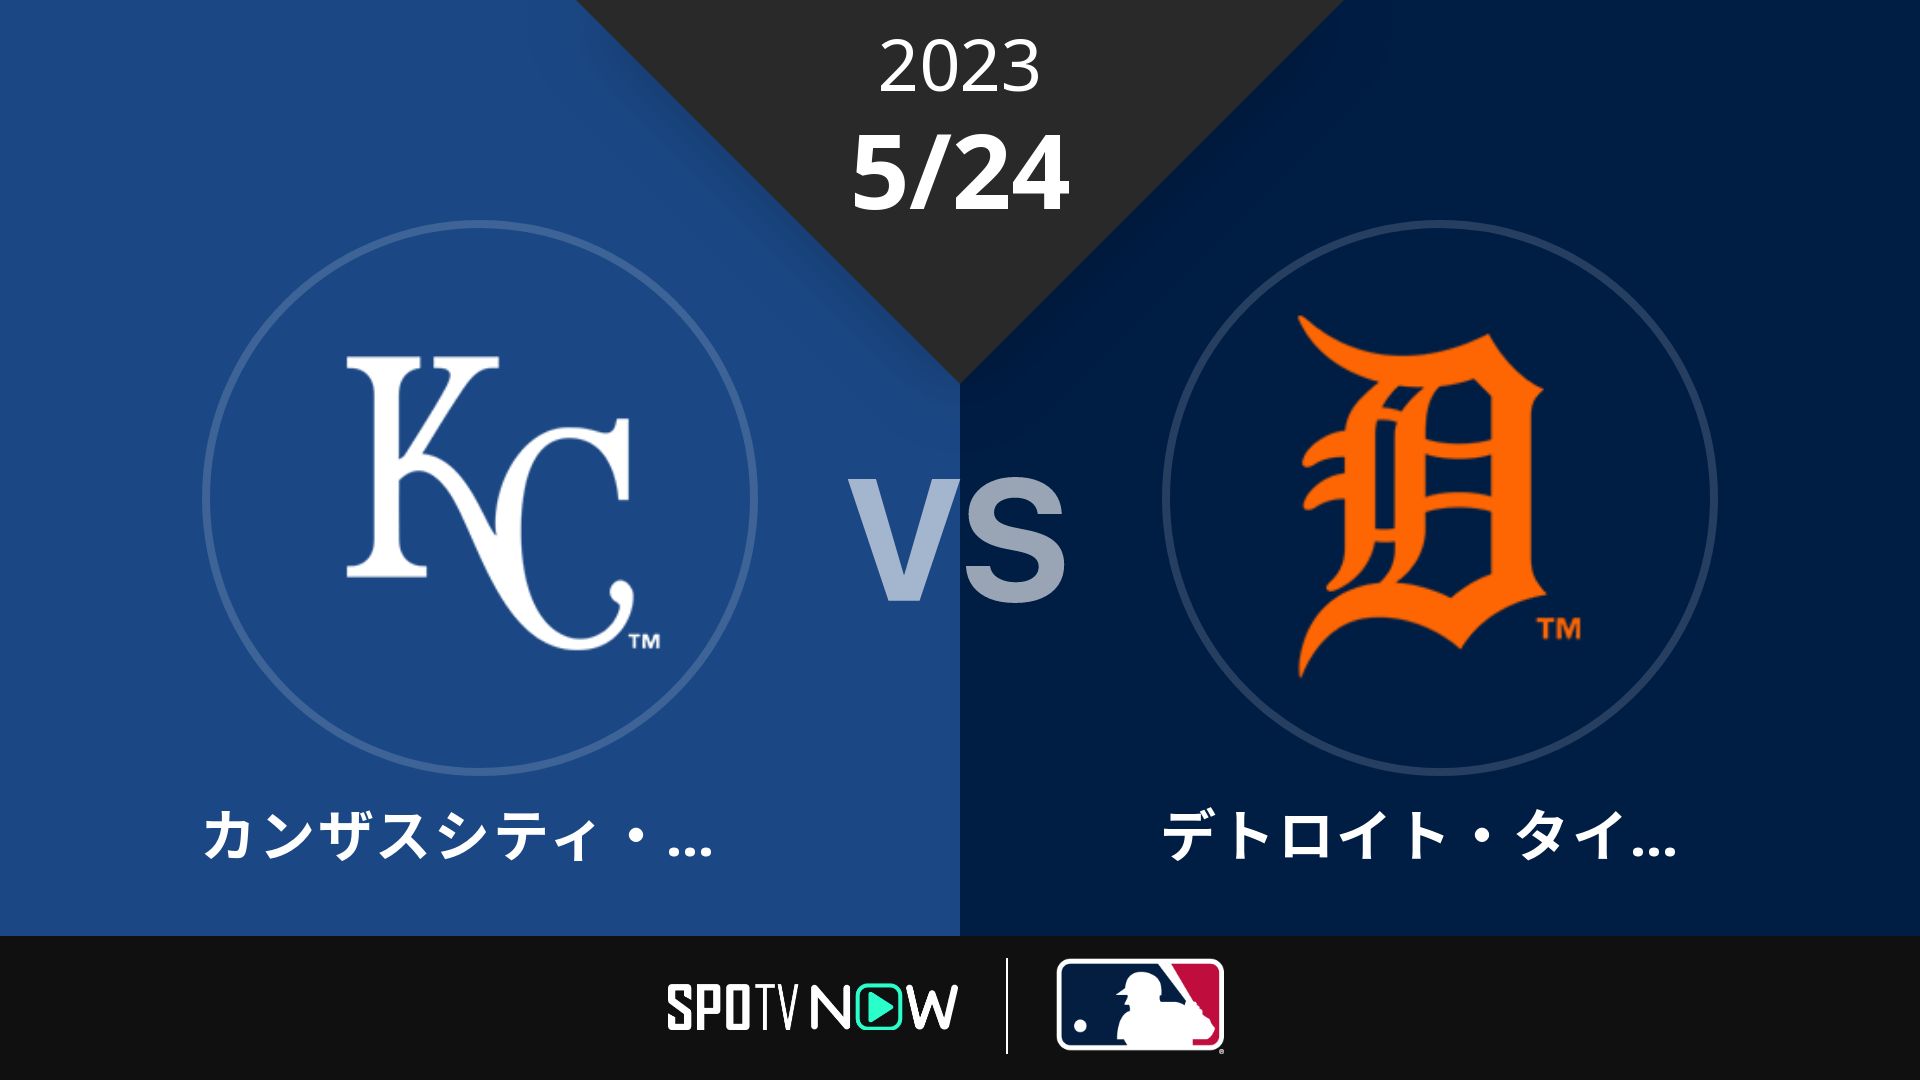 2023/5/24 ロイヤルズ vs タイガース [MLB]